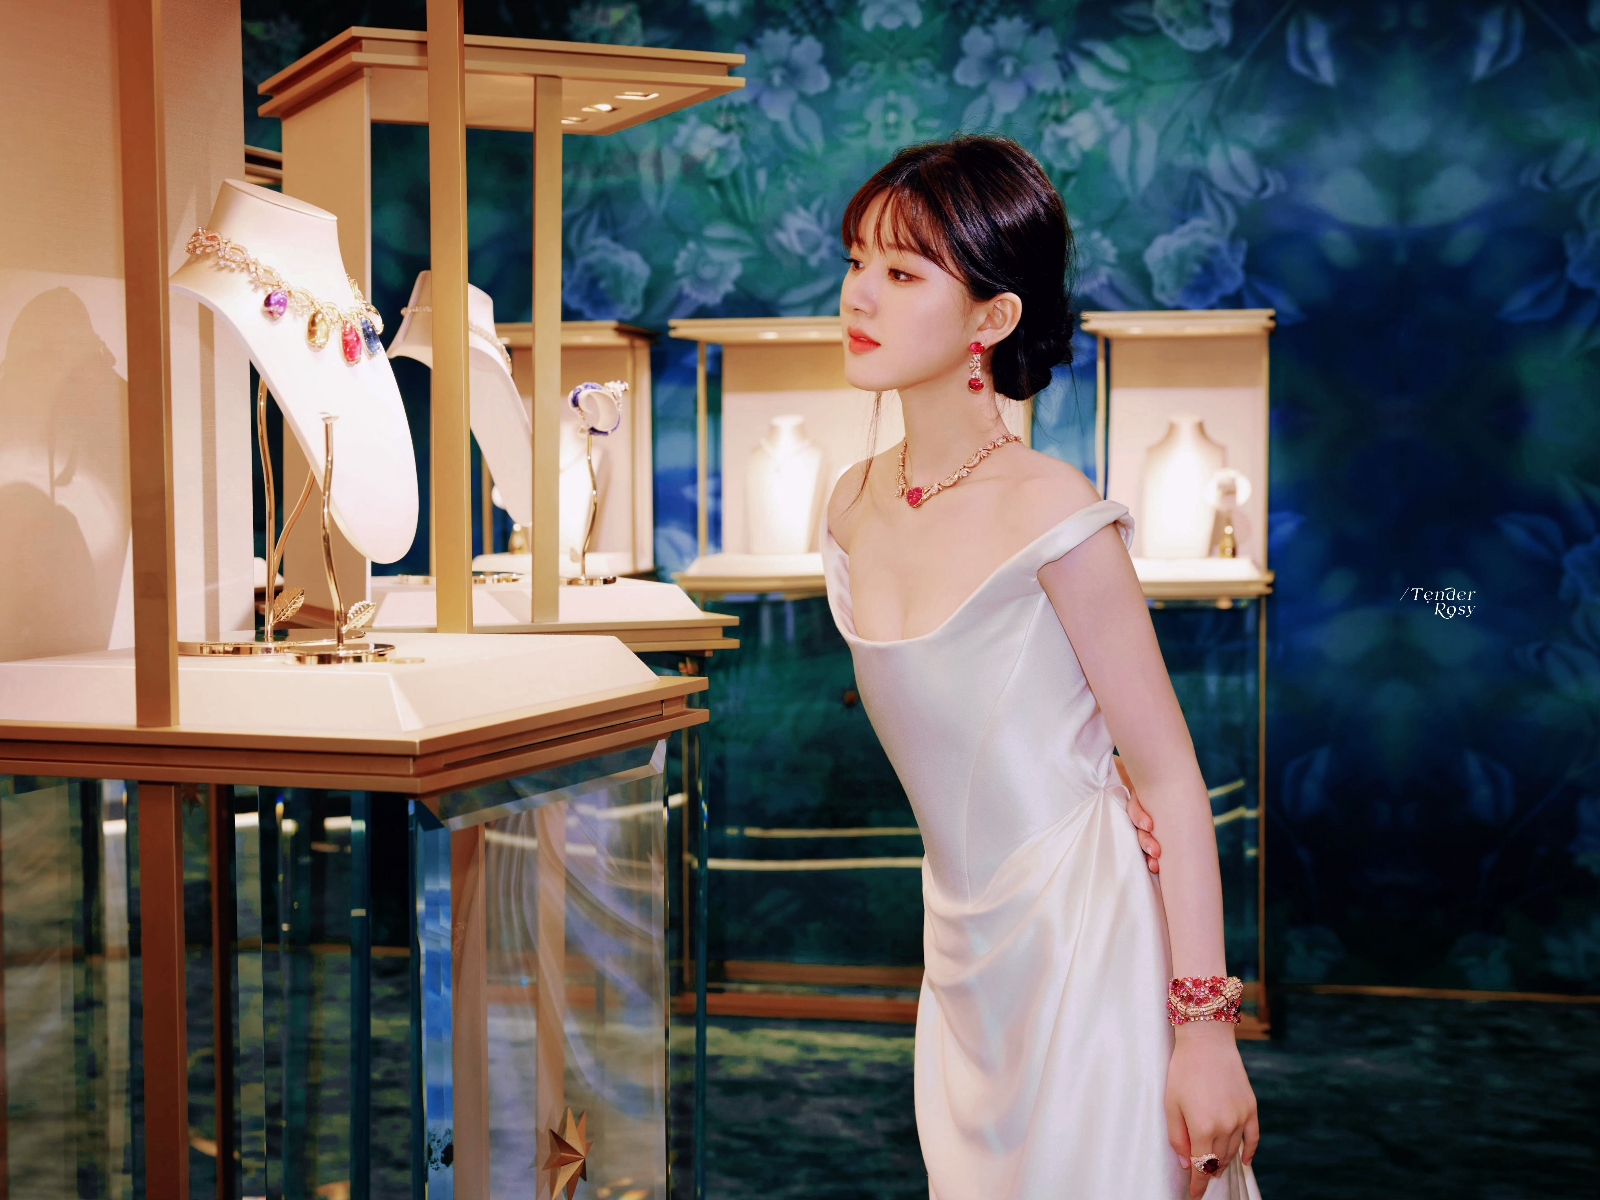 赵露思身穿白色缎面吊带礼服出席宝格丽品牌活动-蘑菇号